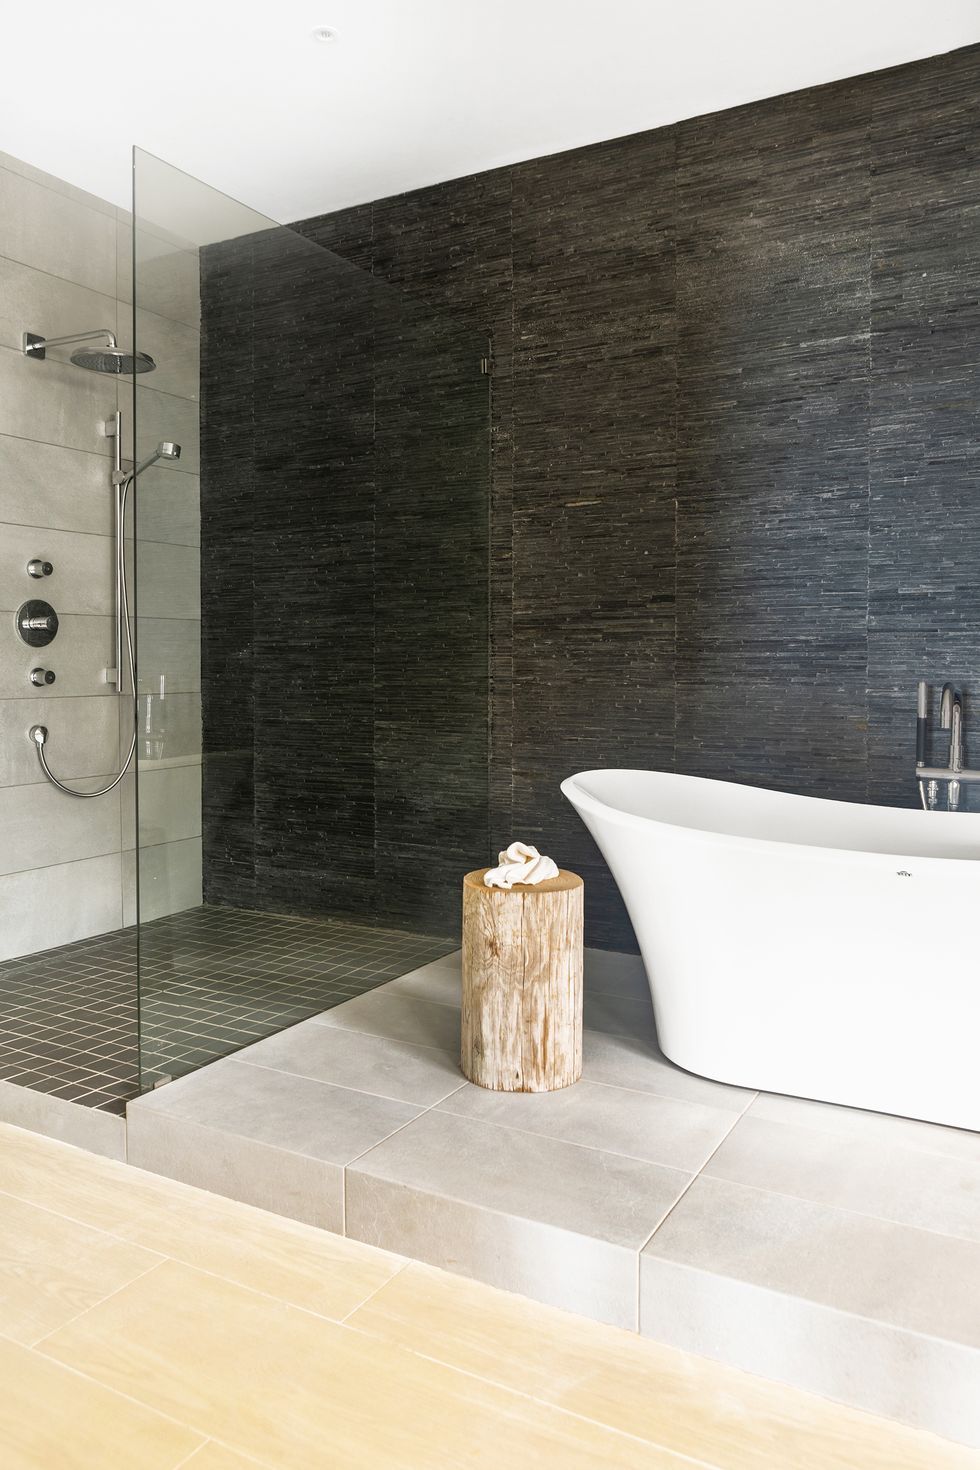 contemporary bathroom tiles design ideas